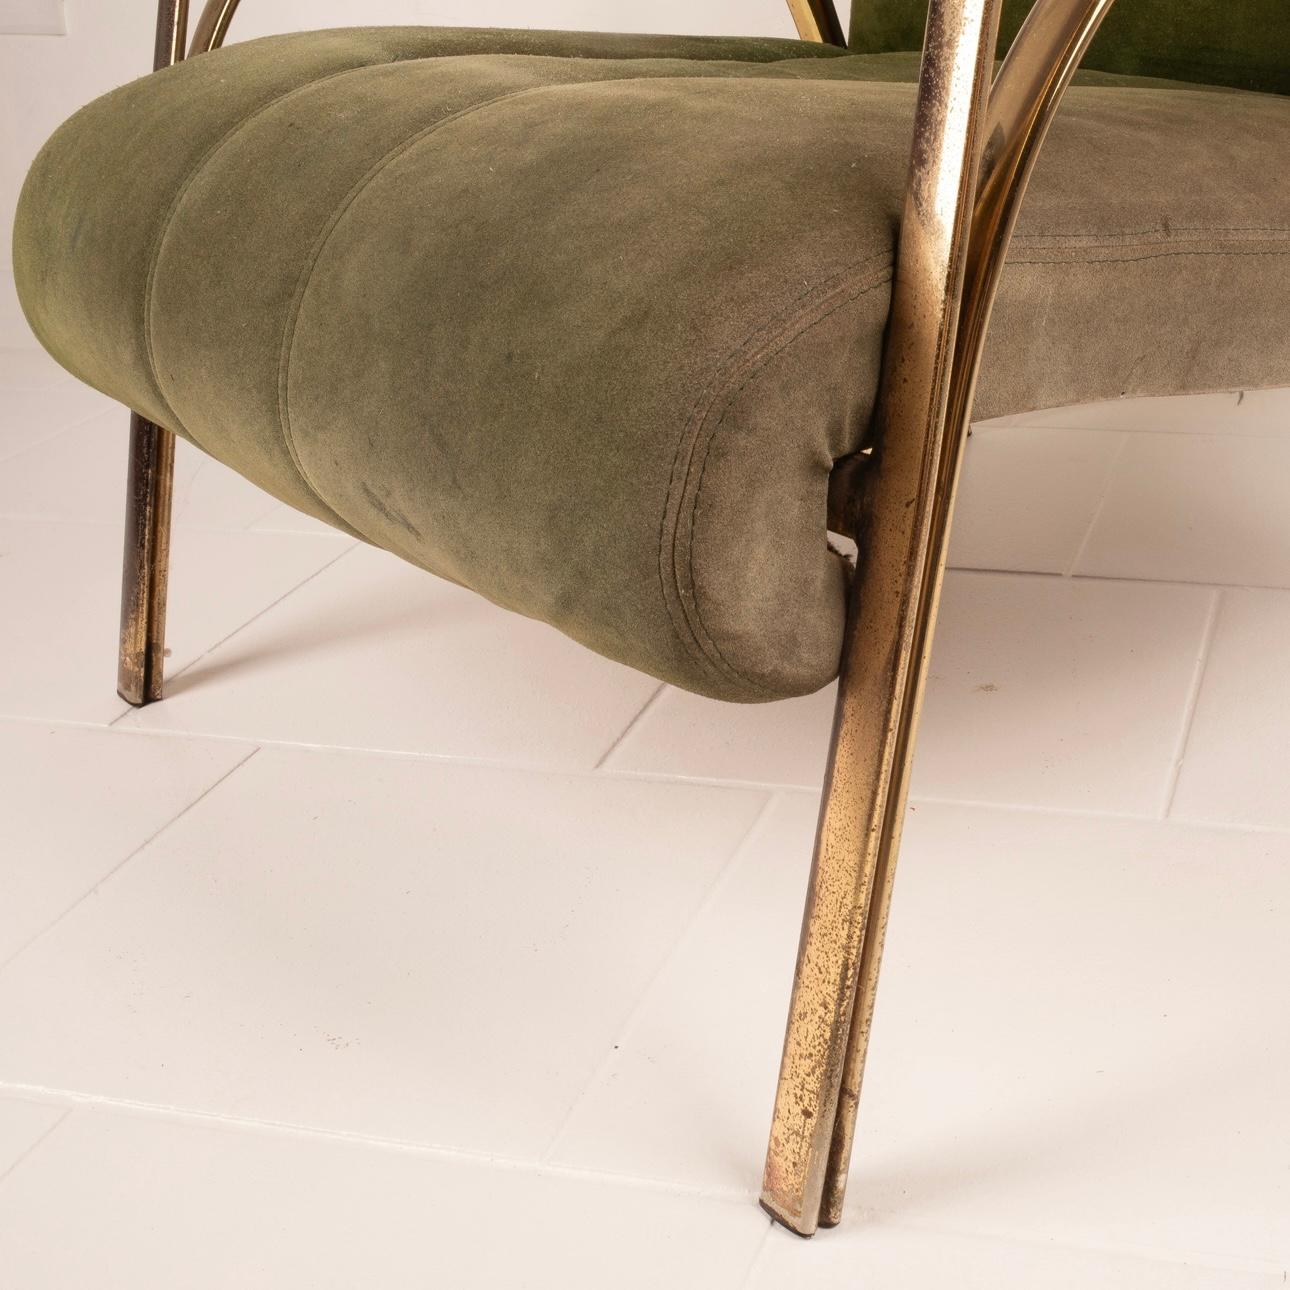 Découvrez un authentique bijou de design vintage avec notre élégant fauteuil de style Hollywood Regency des années 1960, créé par le célèbre designer Vittorio Gregotti.
Réalisé en daim vert fin et doté de profils raffinés en acier plaqué laiton, ce